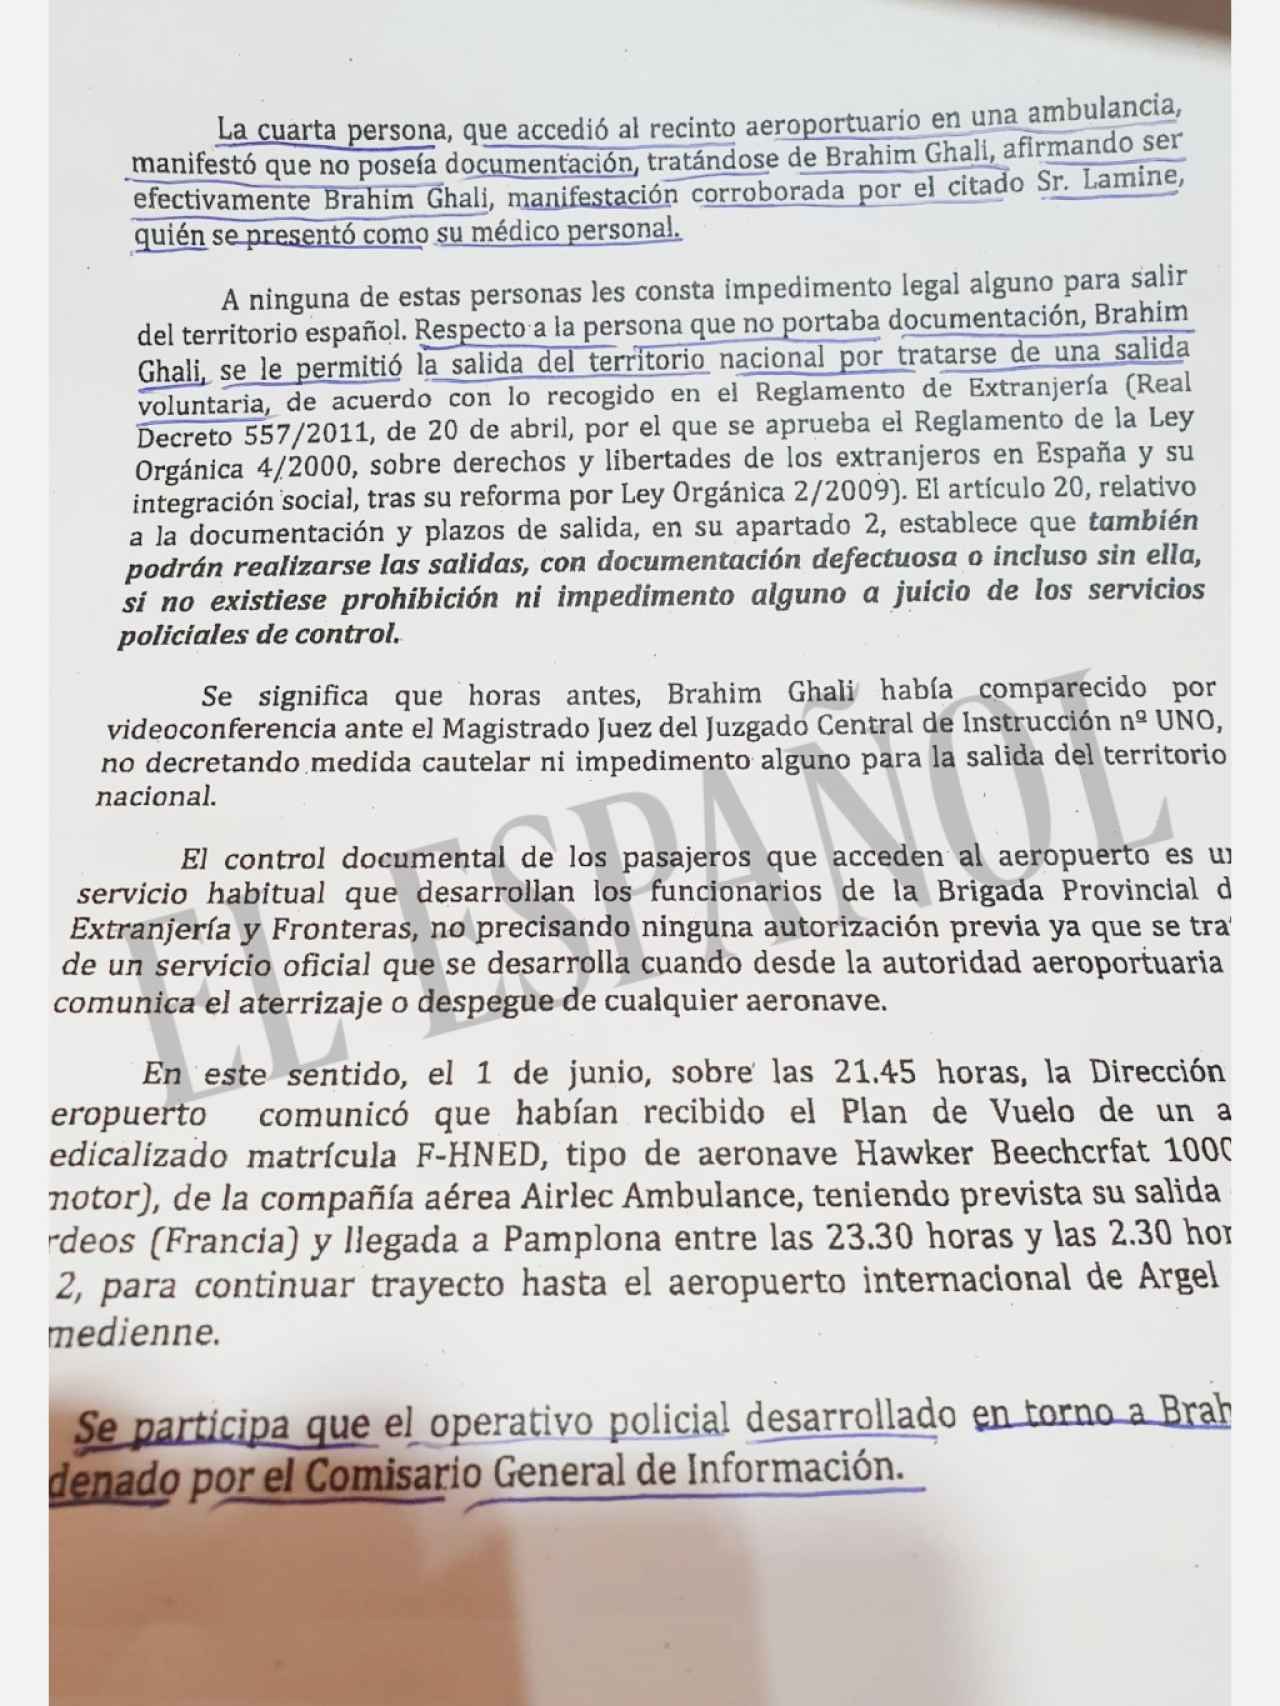 Fragmento del informe de la Jefatura Superior de Policía de Navarra.